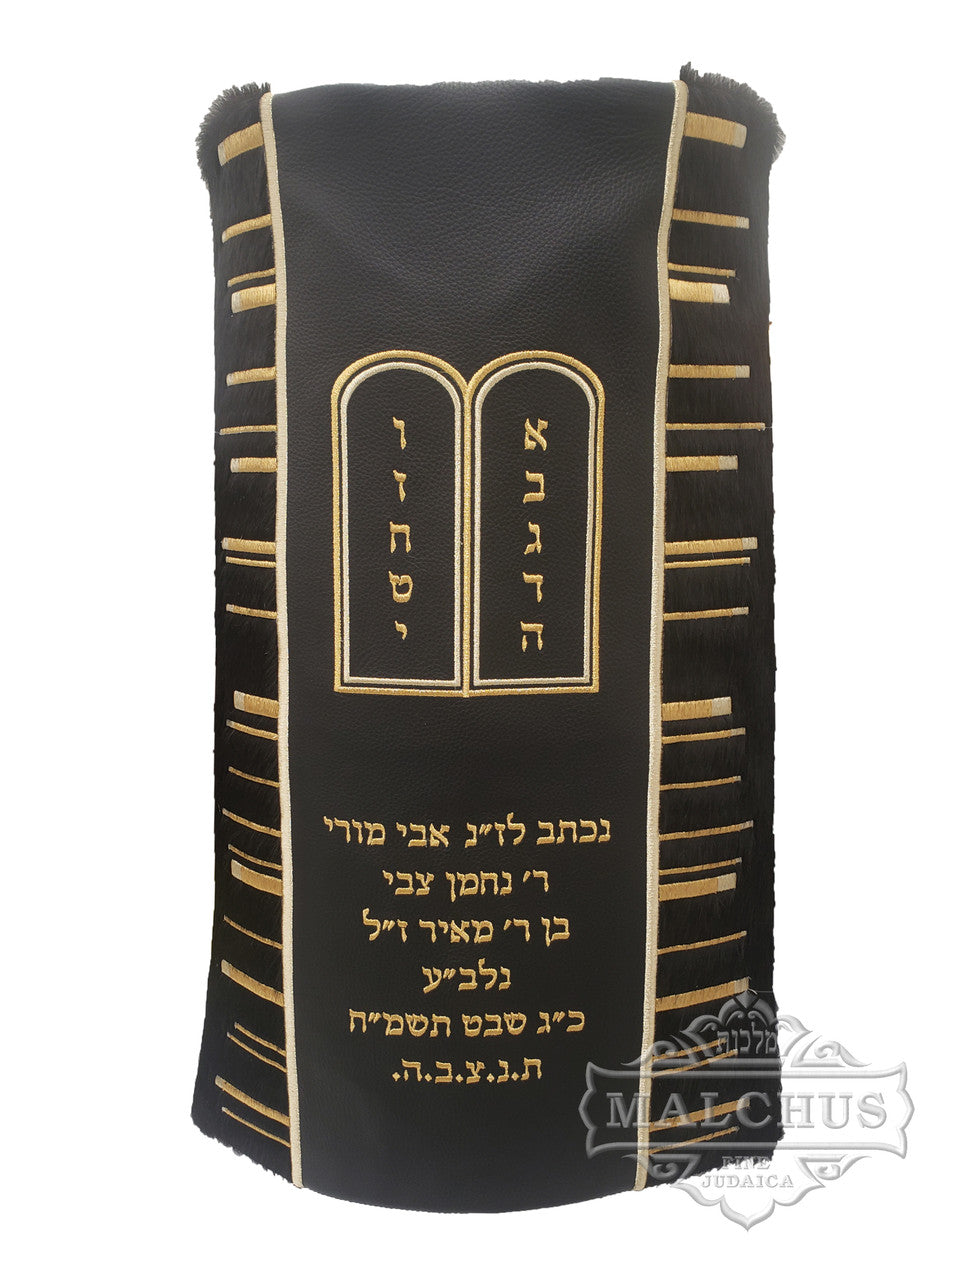 Sefer Torah Mantel #69-1